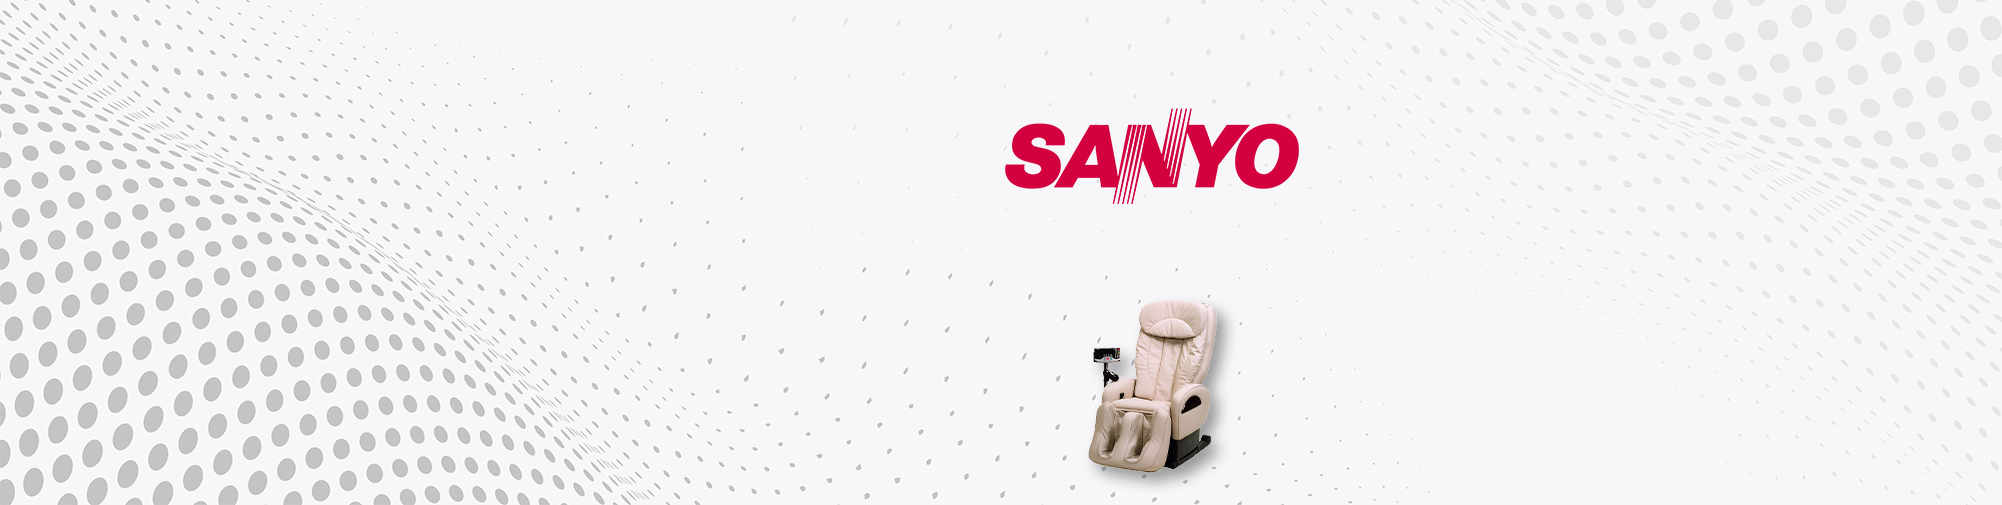 SANYO - японська торгова марка | Світ масажних крісел